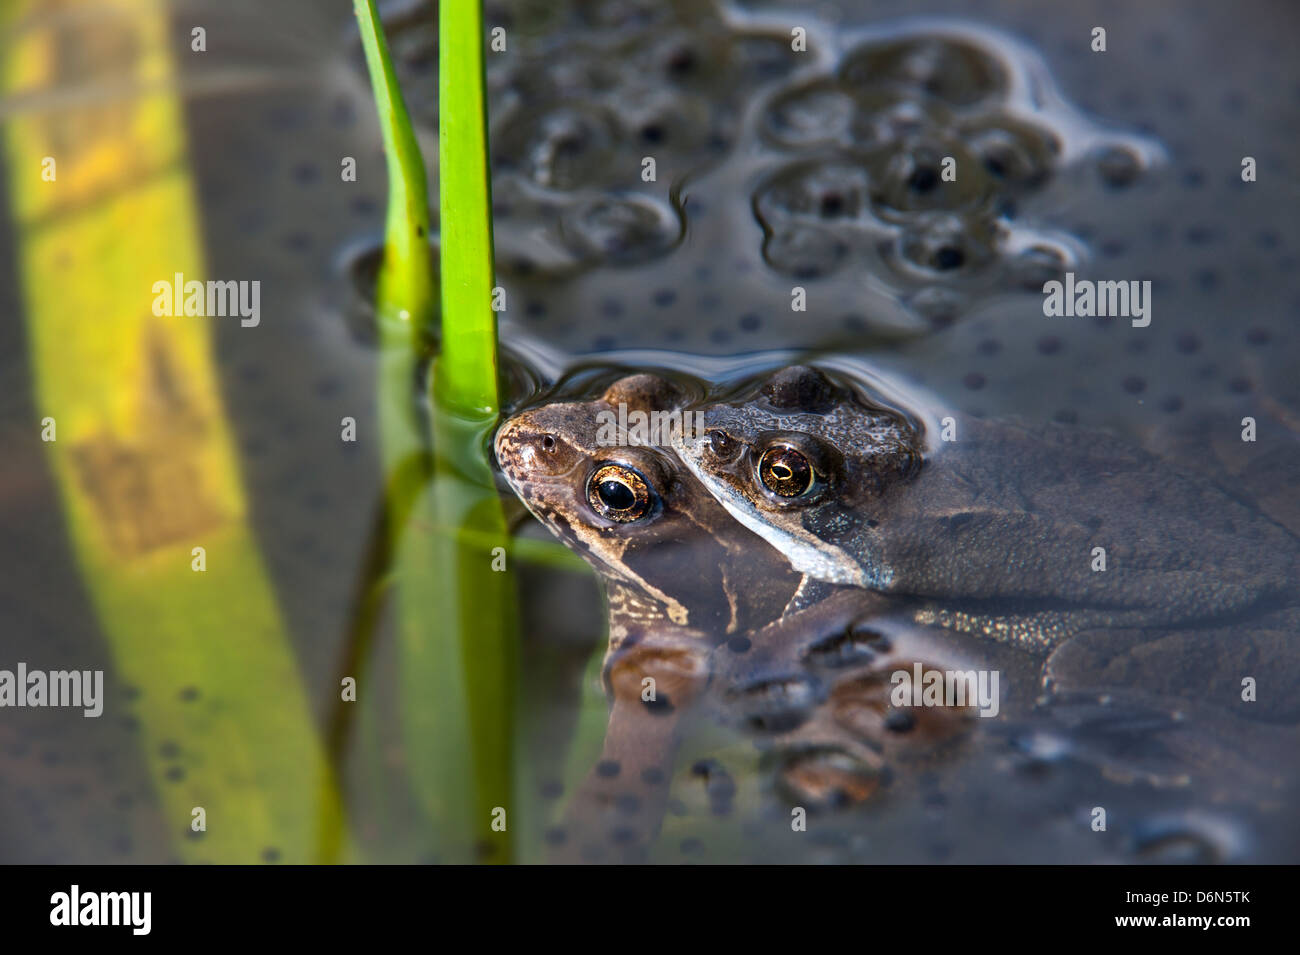 https://c8.alamy.com/comp/D6N5TK/european-common-brown-frogs-rana-temporaria-pair-in-amplexus-floating-D6N5TK.jpg